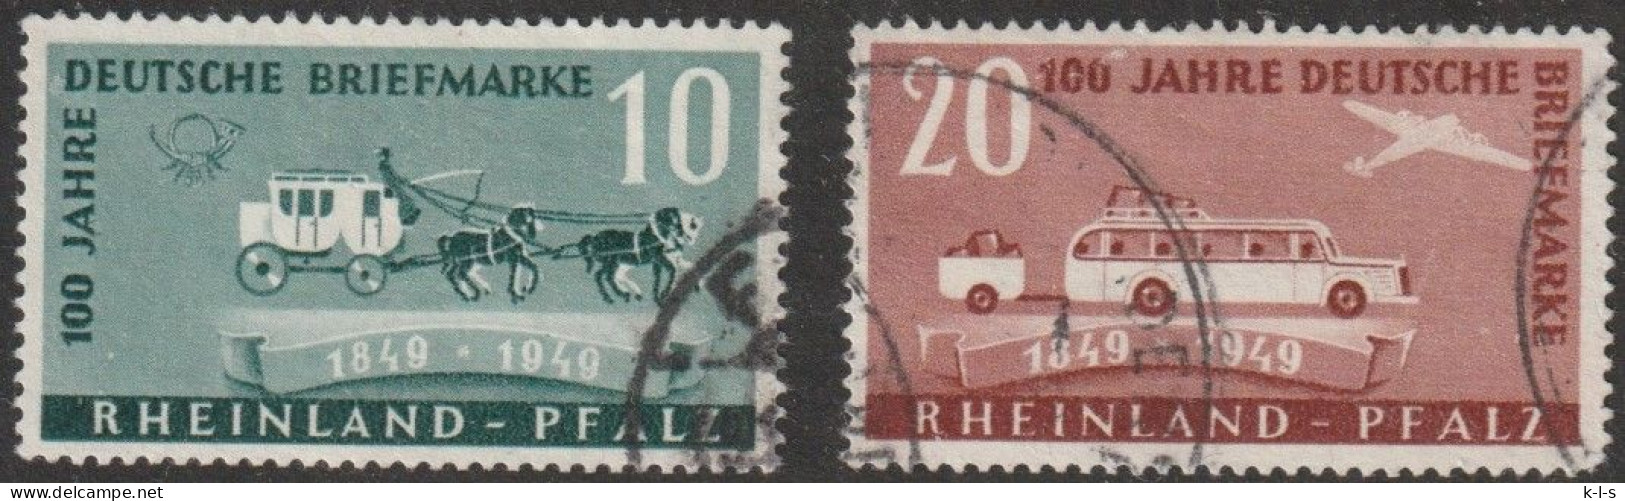 Franz. Zone- Rheinland Pfalz: 1949, Mi. Nr. 49-50,  100 Jahre Deutsche Briefmarken.  Gestpl./used - Rhine-Palatinate